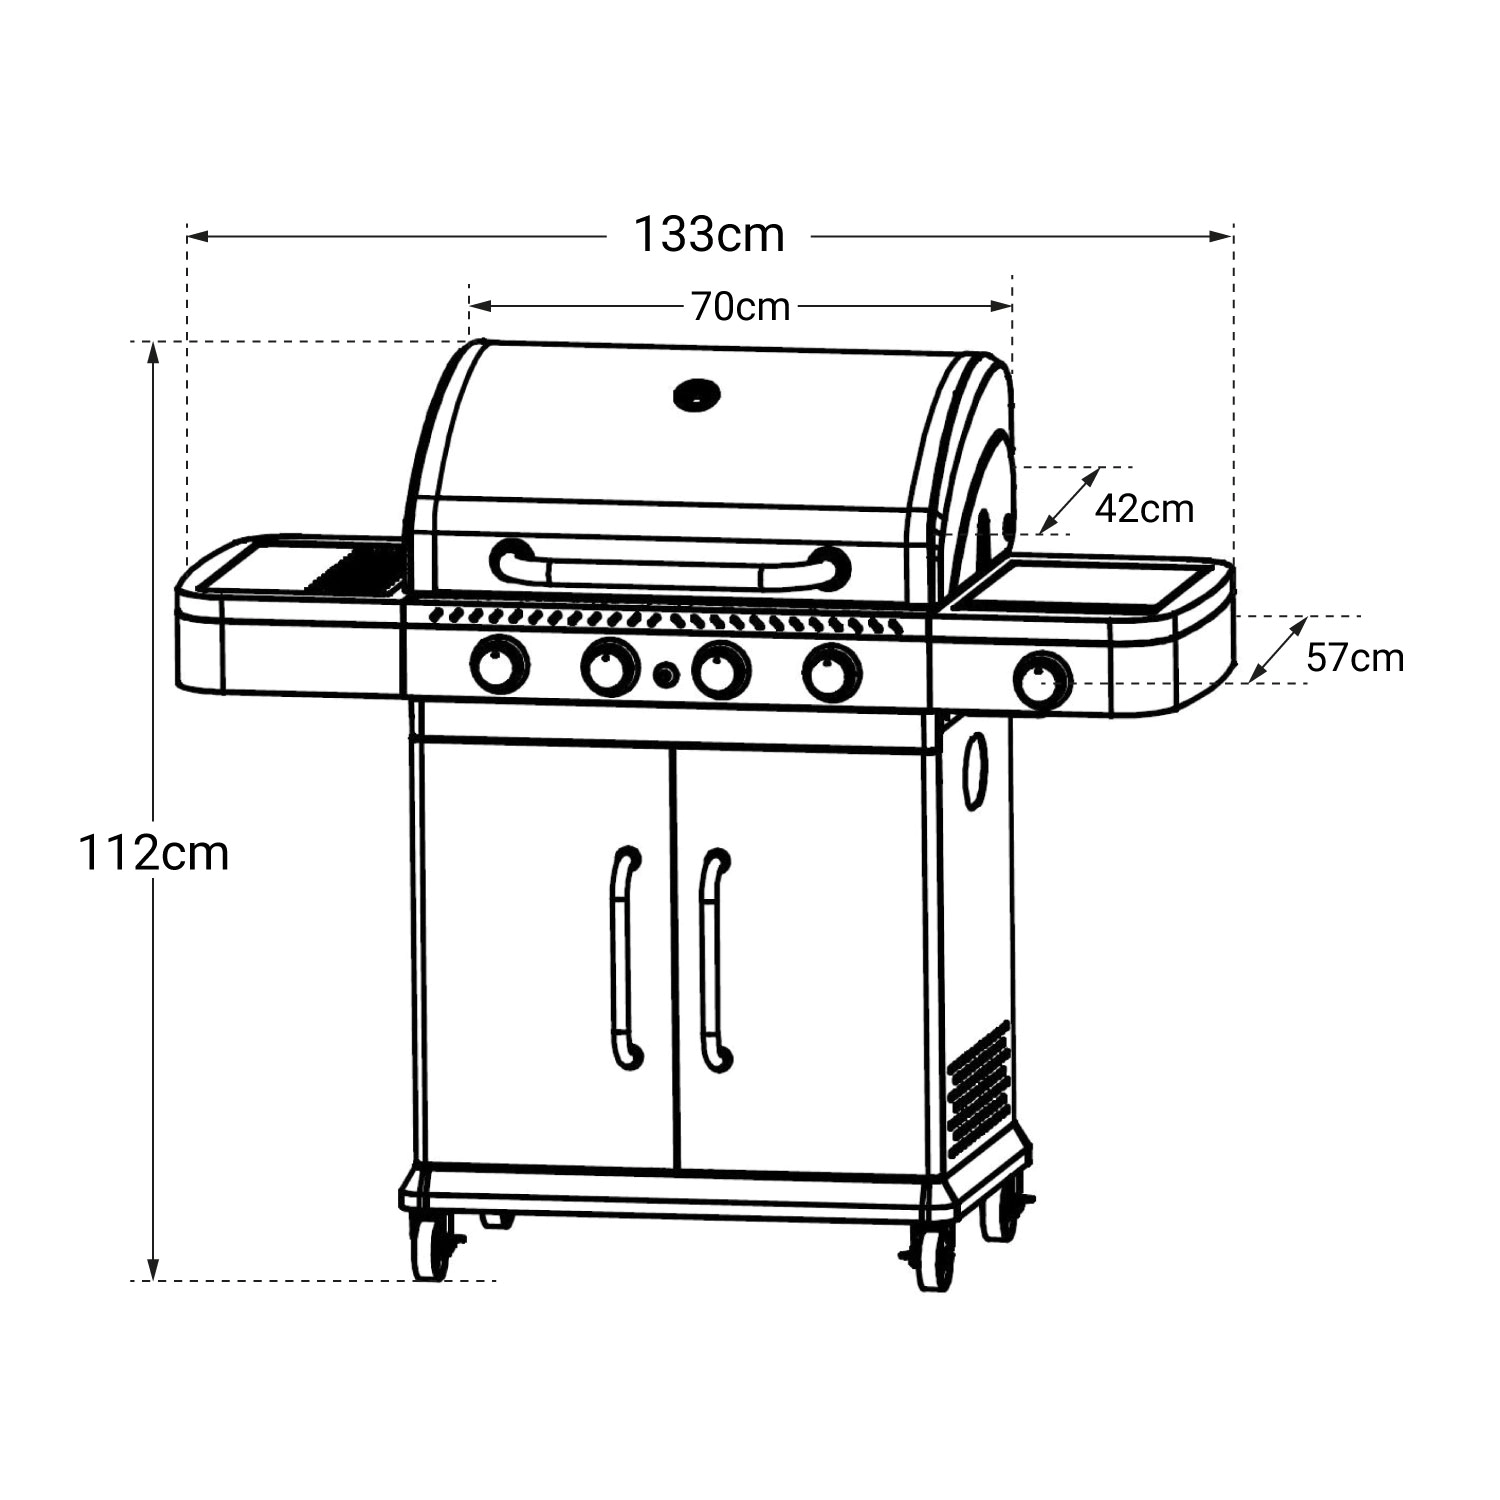 Cook'in Garden - Barbecue a gas FIDGI 4 con termometro - 4 bruciatori + fornello da 14,5kW